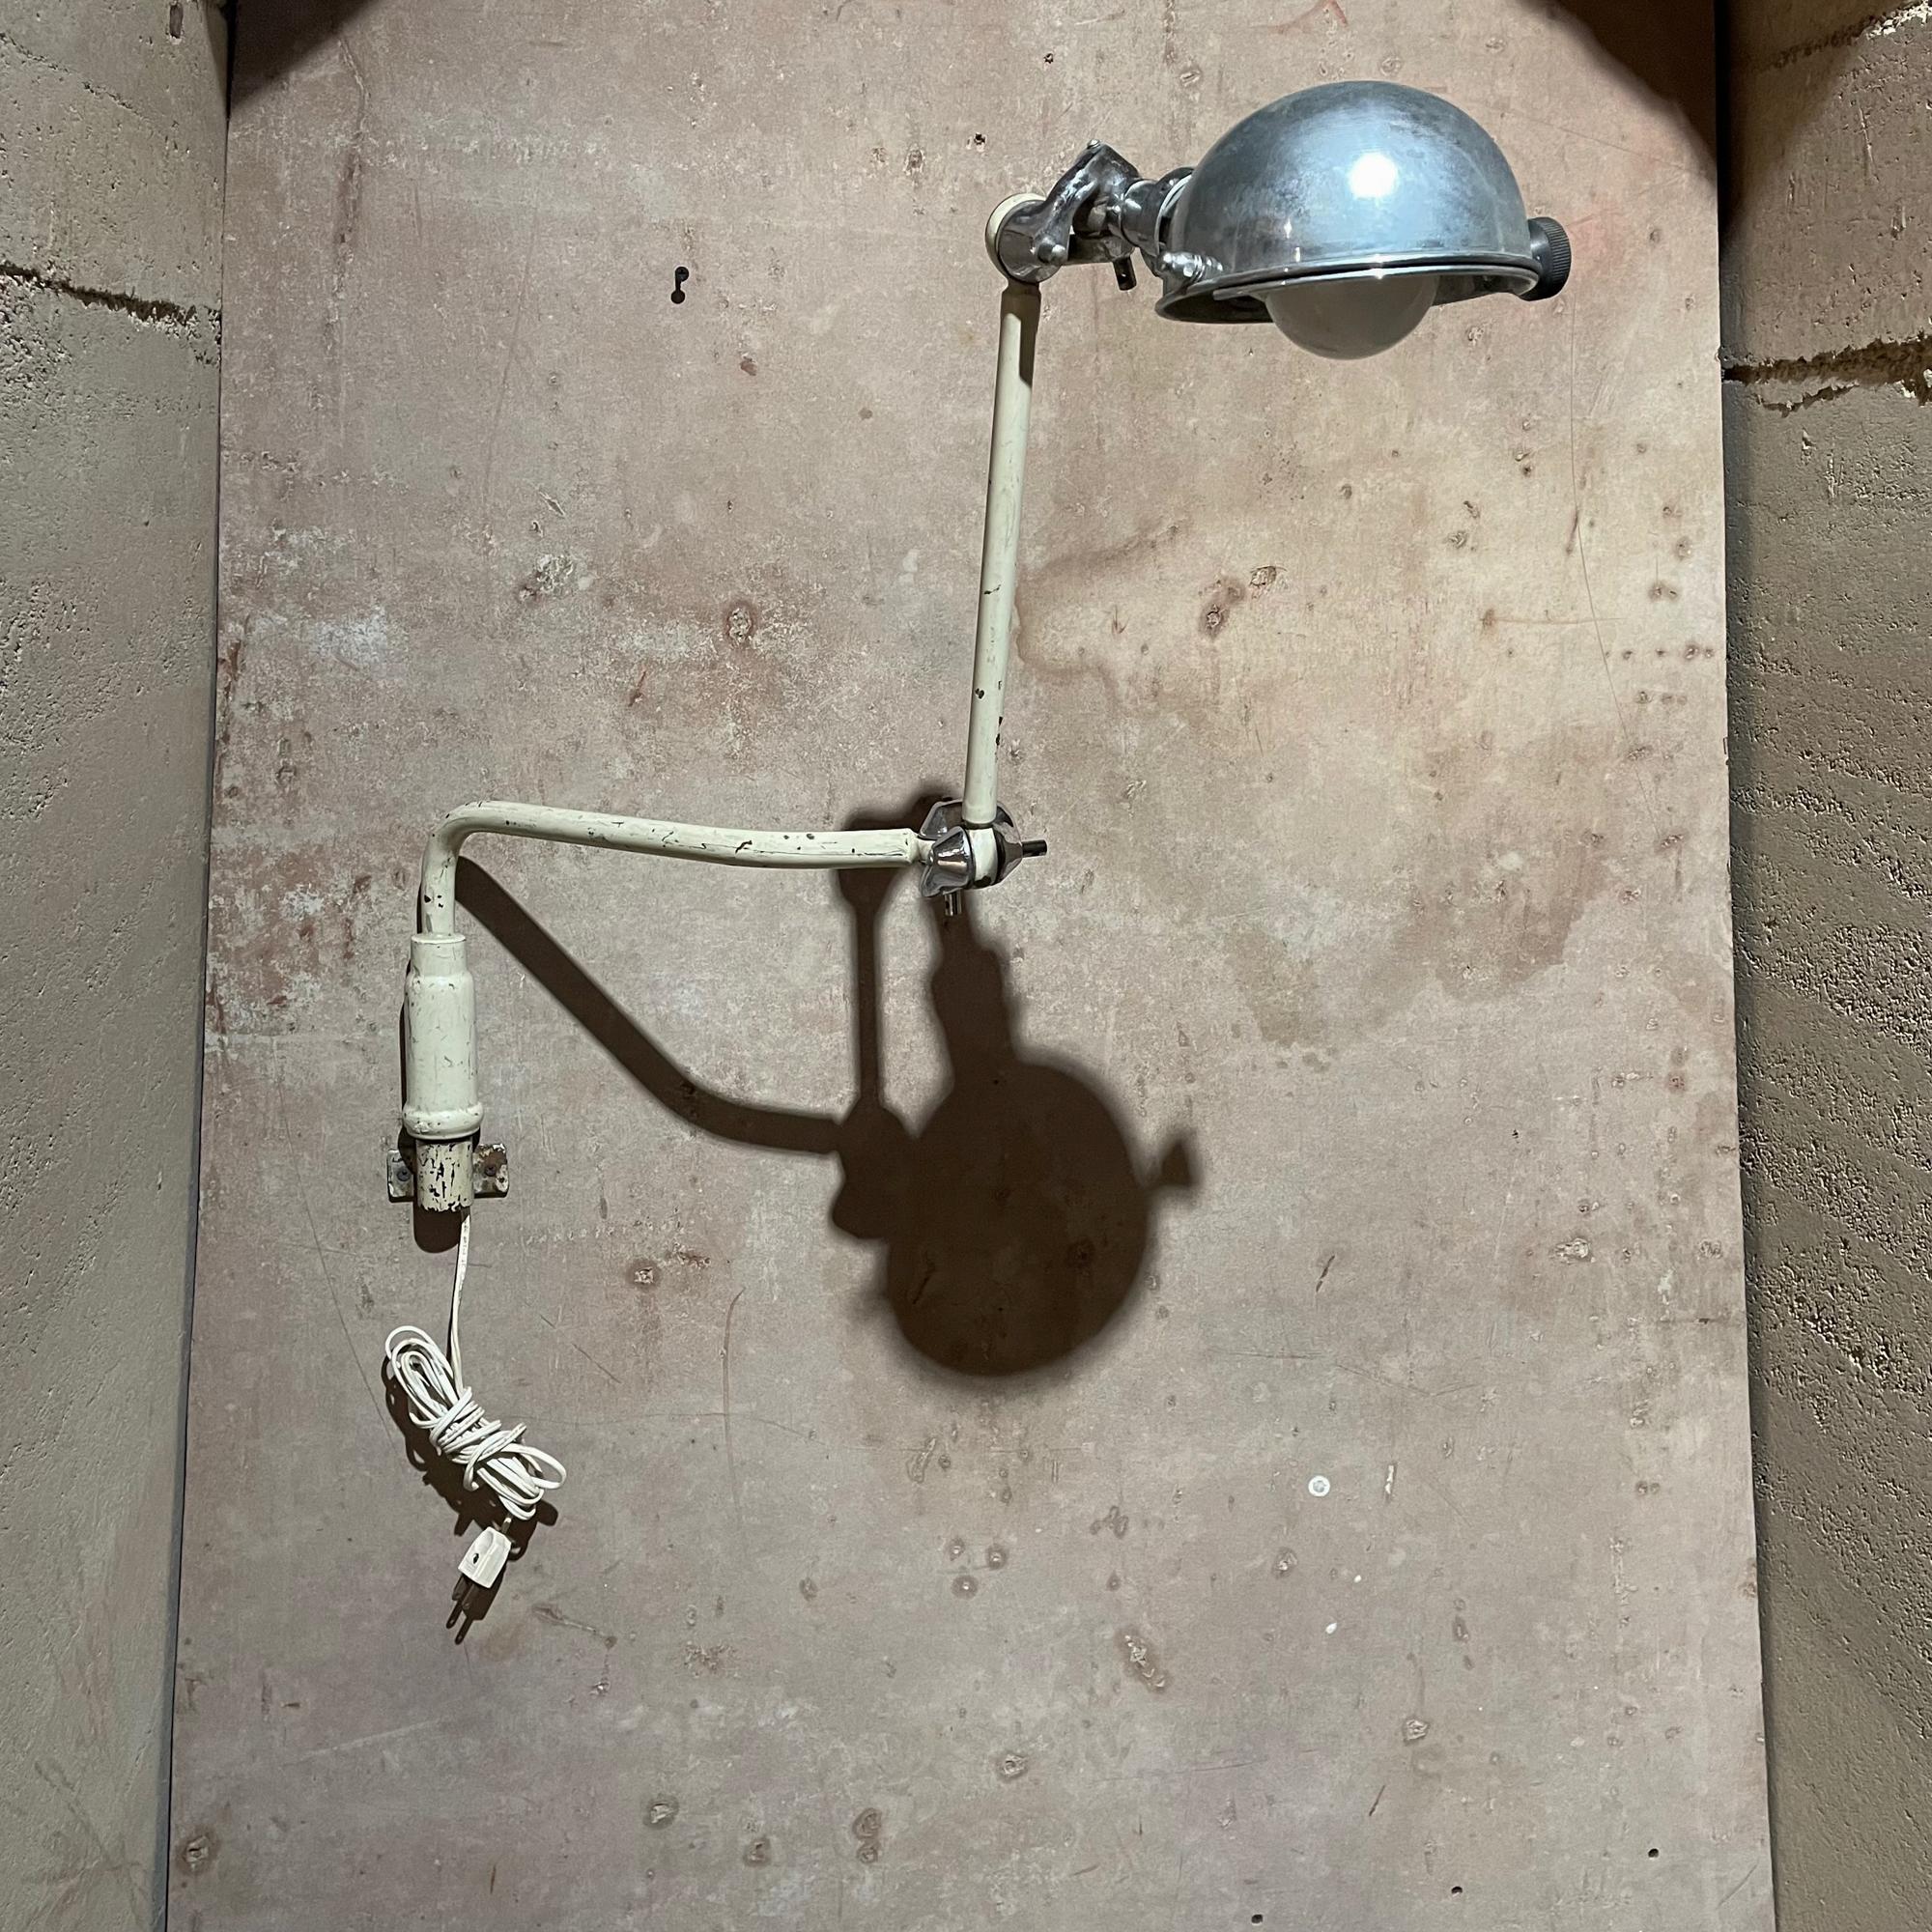 Wandleuchter
Vintage Industrial medizinisches Licht chirurgische zahnärztliche Wandleuchte Lampe circa 1930s
Gefertigt aus Bronze und Messing. Messing ist verchromt.
Der Bronzekörper ist weiß lackiert, einige Bereiche sind verchromt. 
Die Leuchte